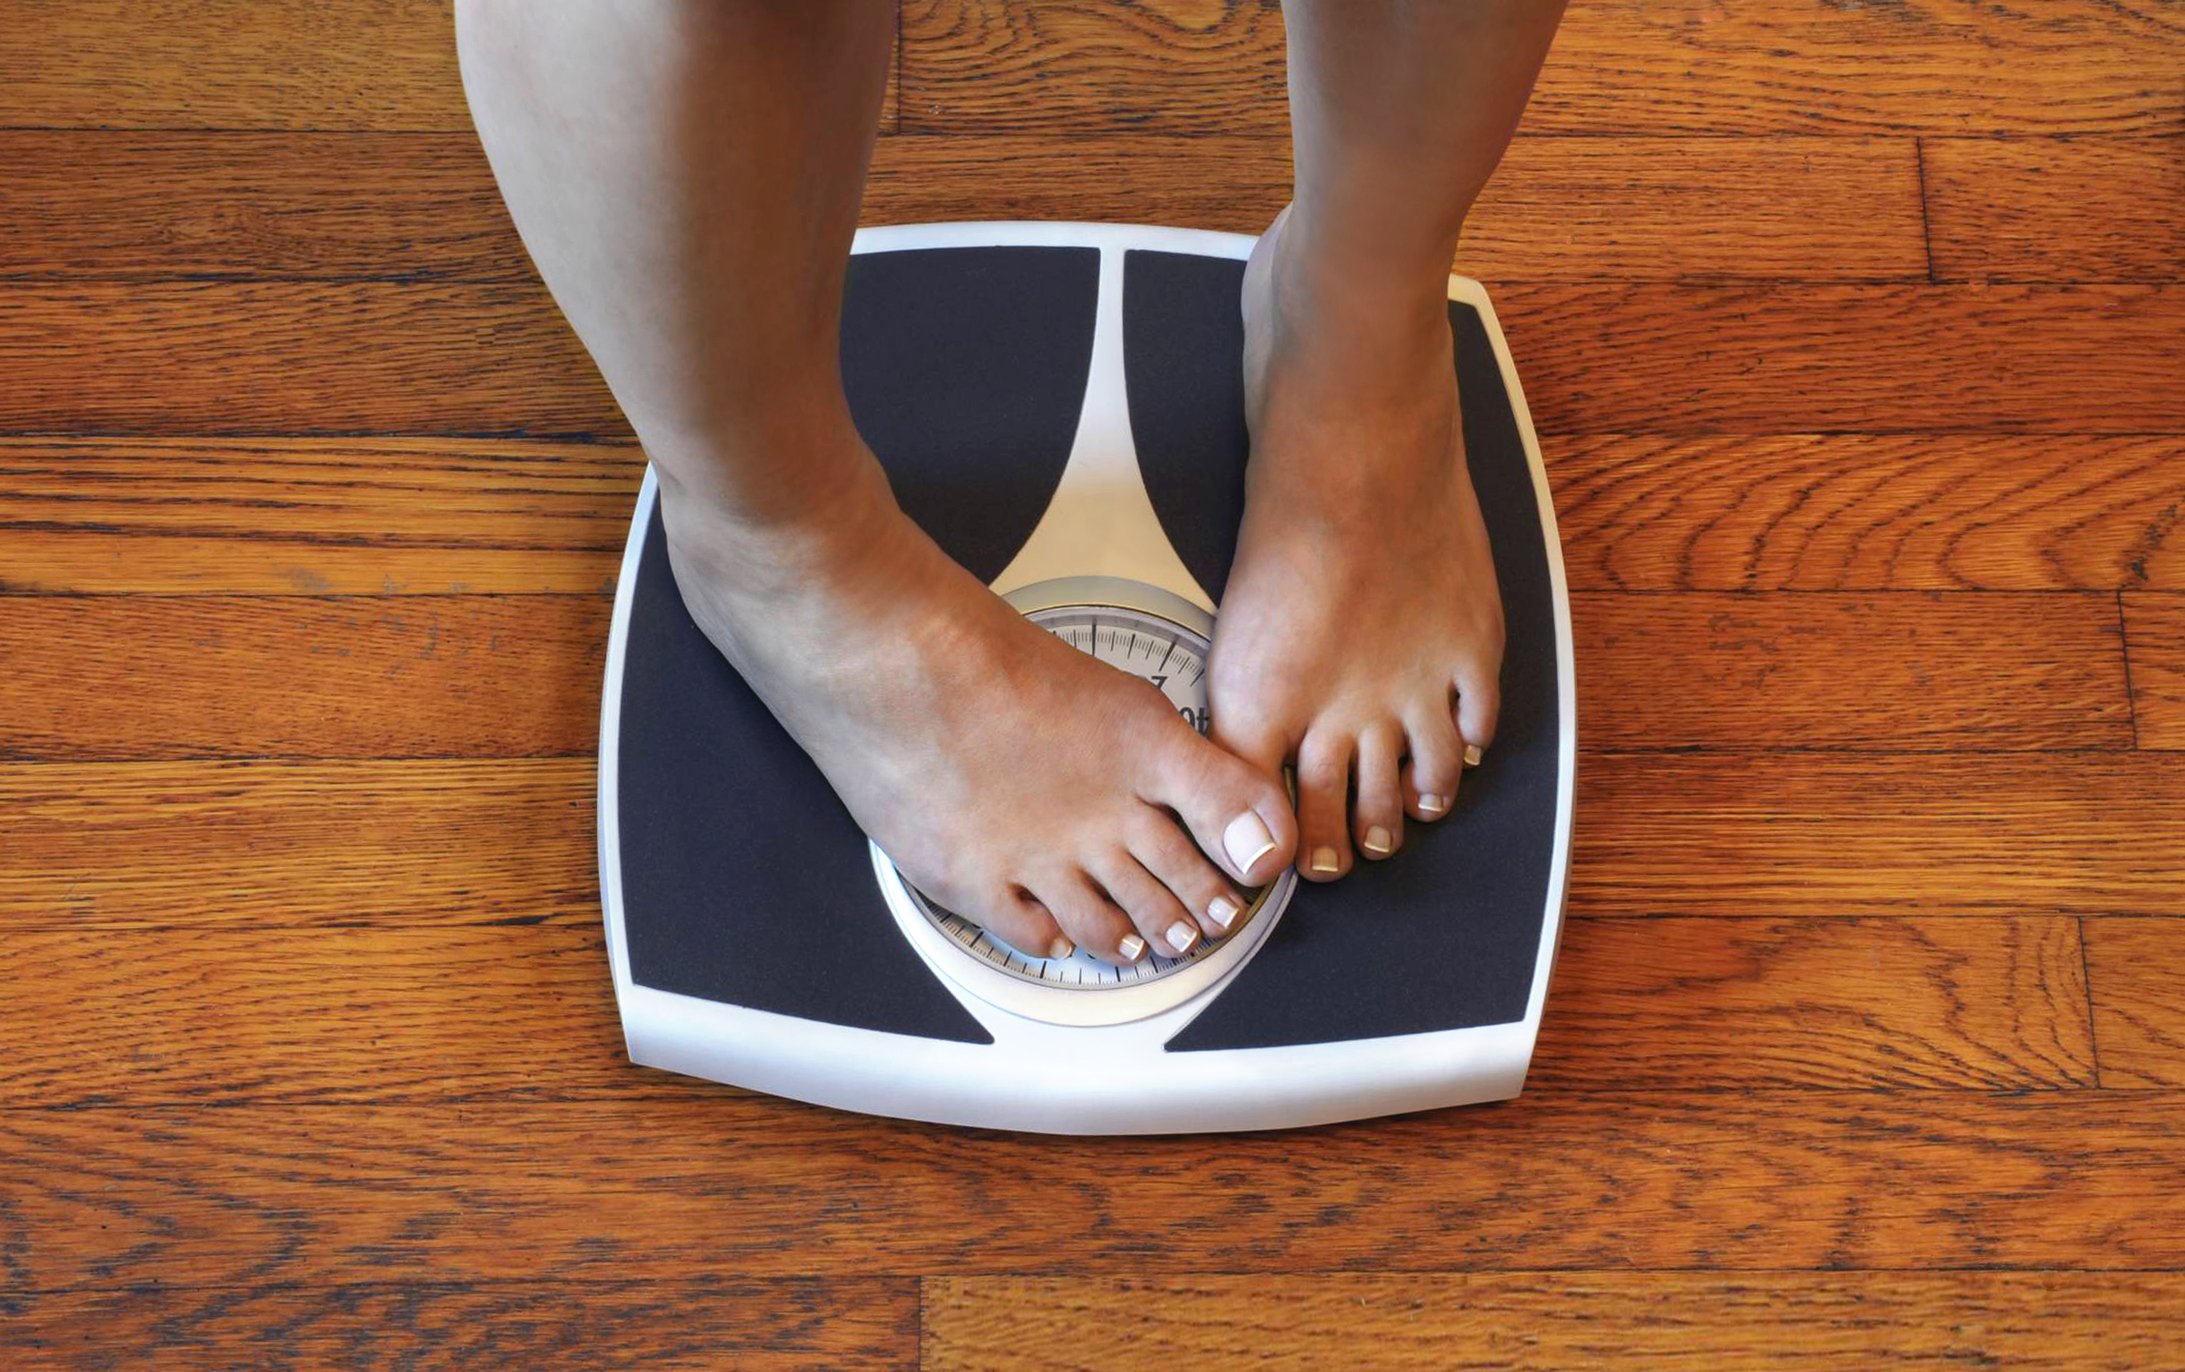 Frau auf der Waage unzufrieden mit ihrem Gewicht. I Quelle: Getty Images